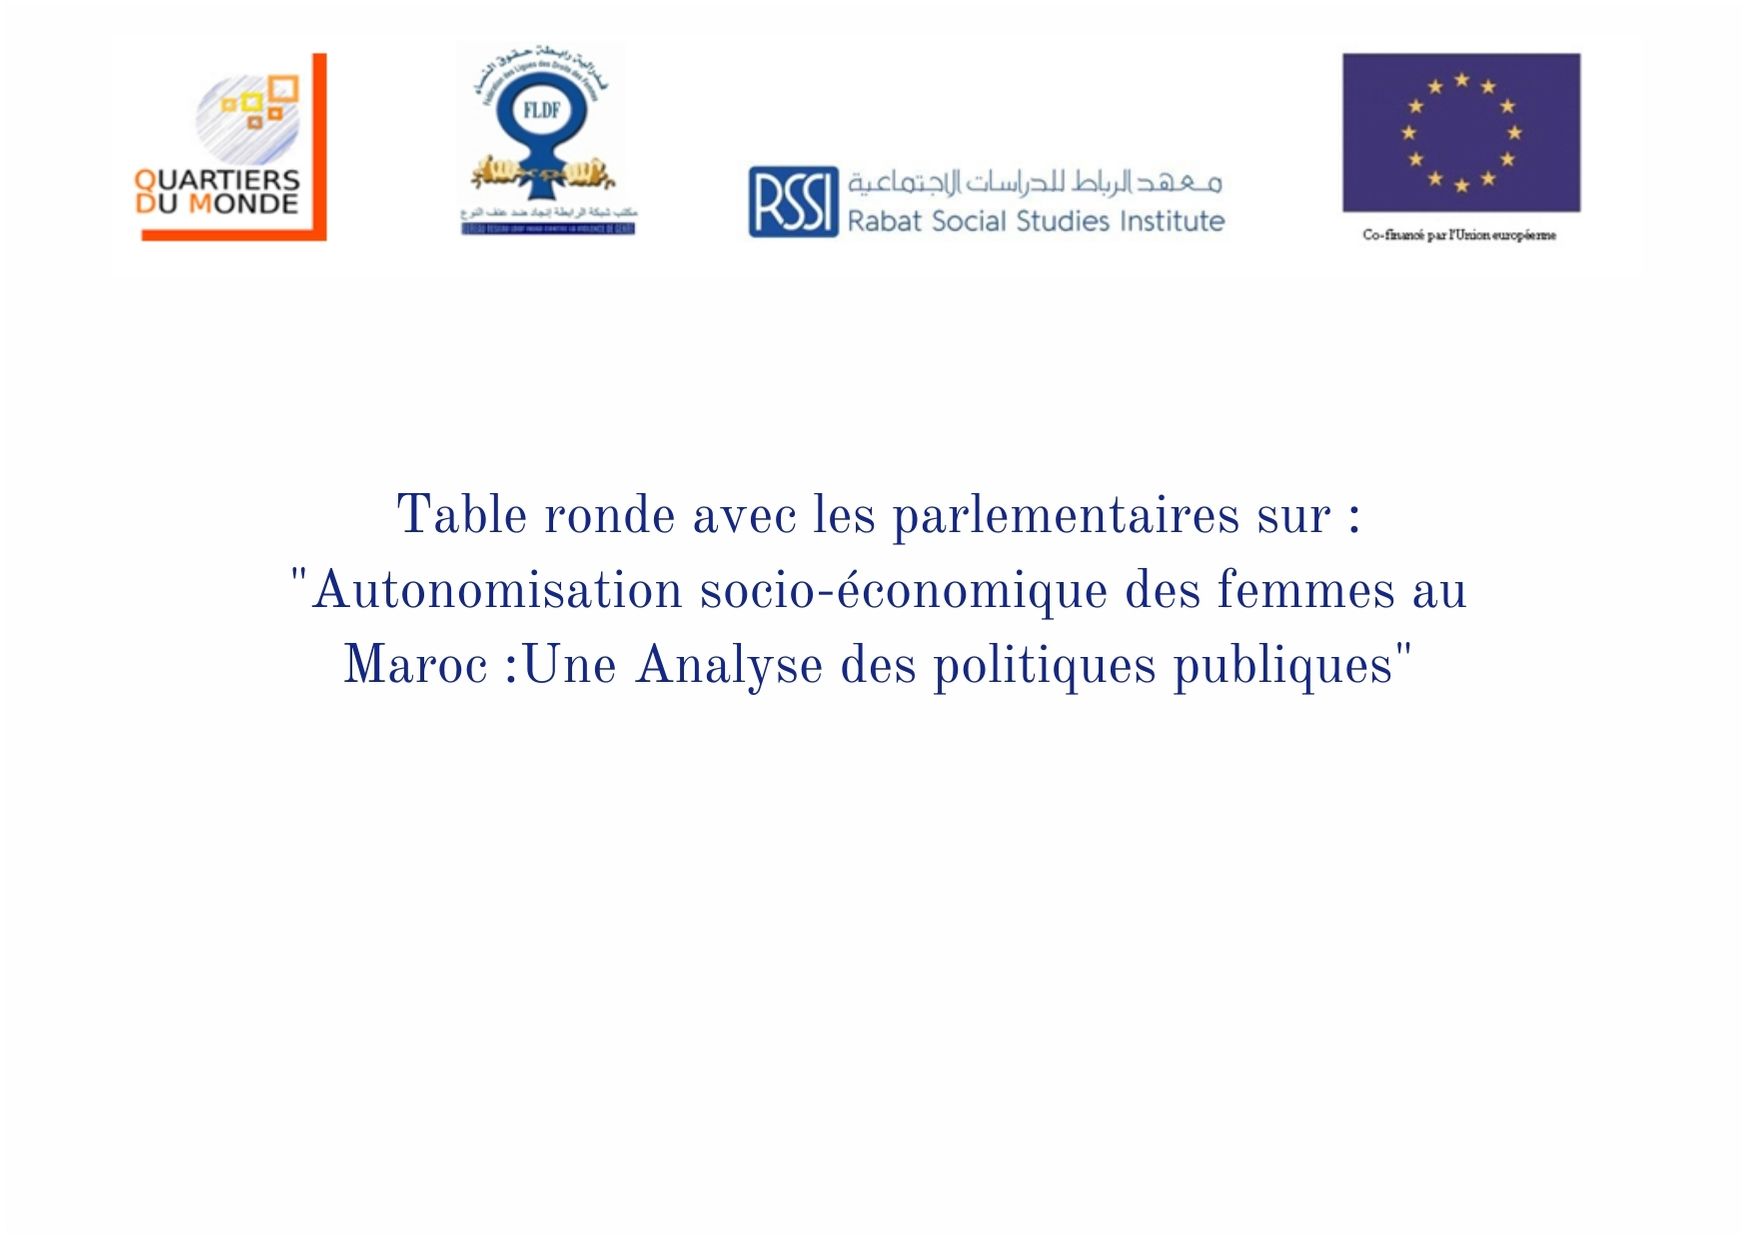 Table ronde sur l’autonomisation socio-économique des femmes au Maroc | Mercredi 3 février 2021